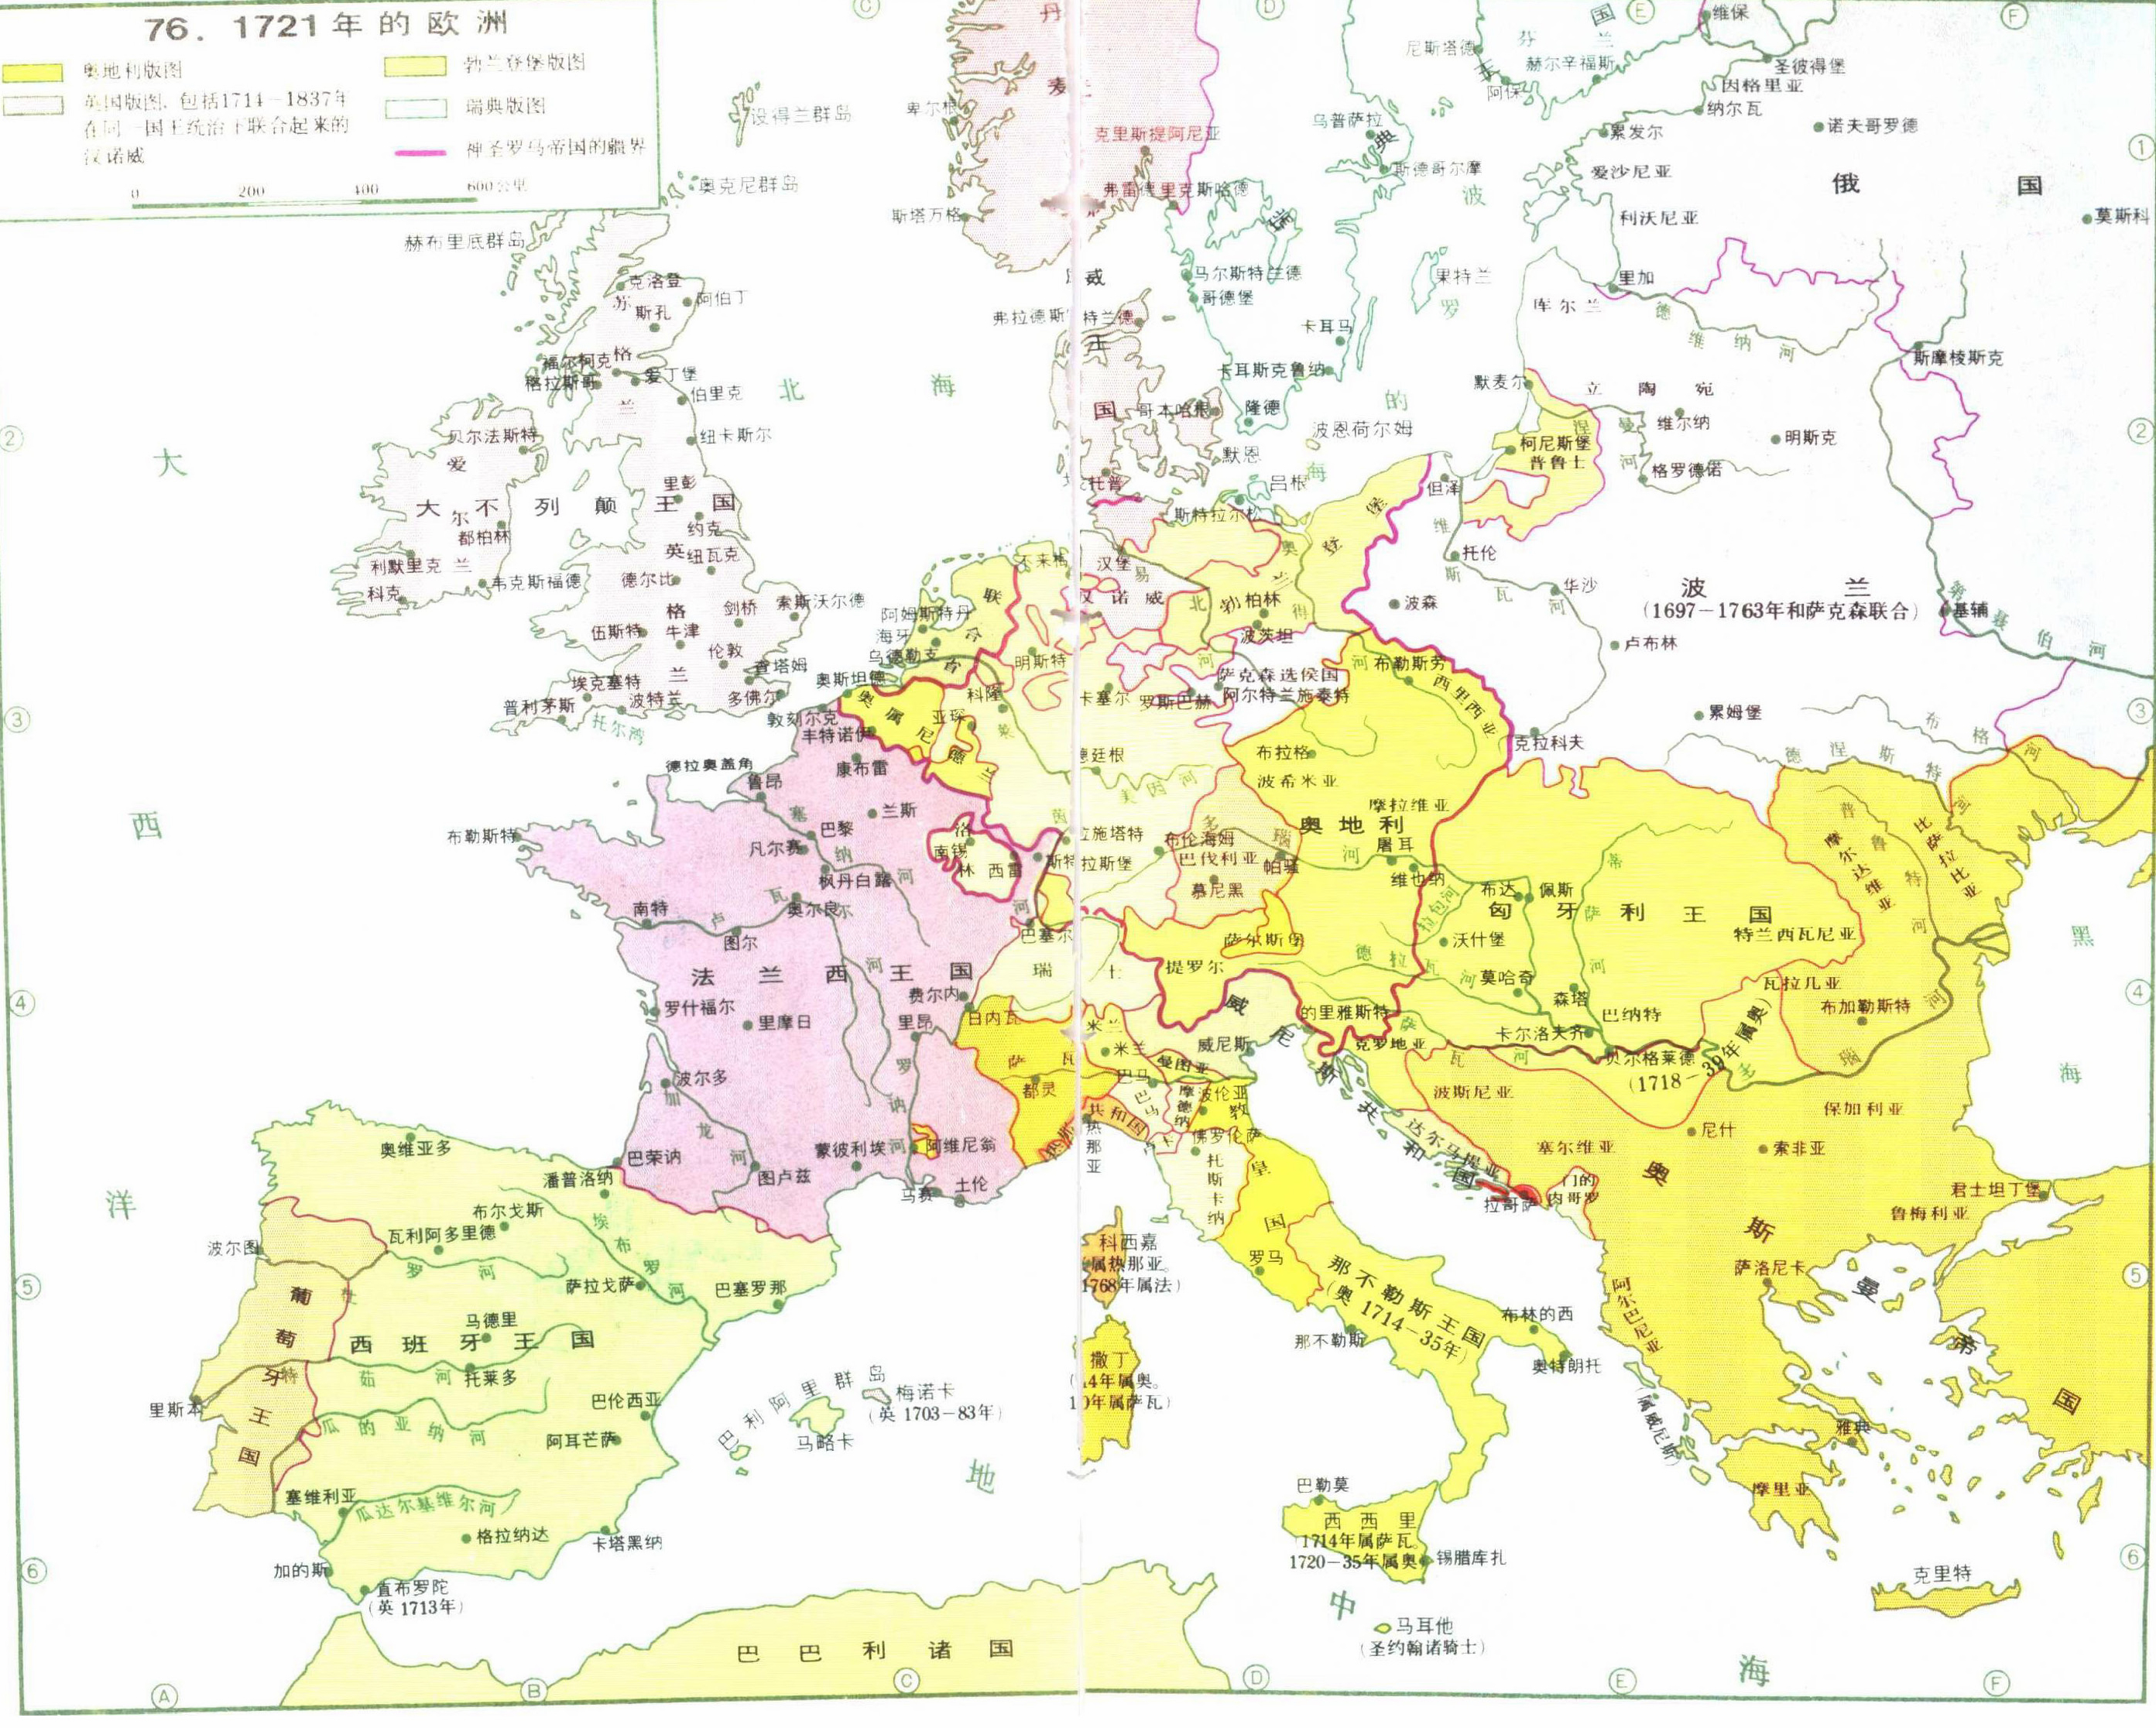 公元17世纪,大发现,大航海与殖民,让欧洲